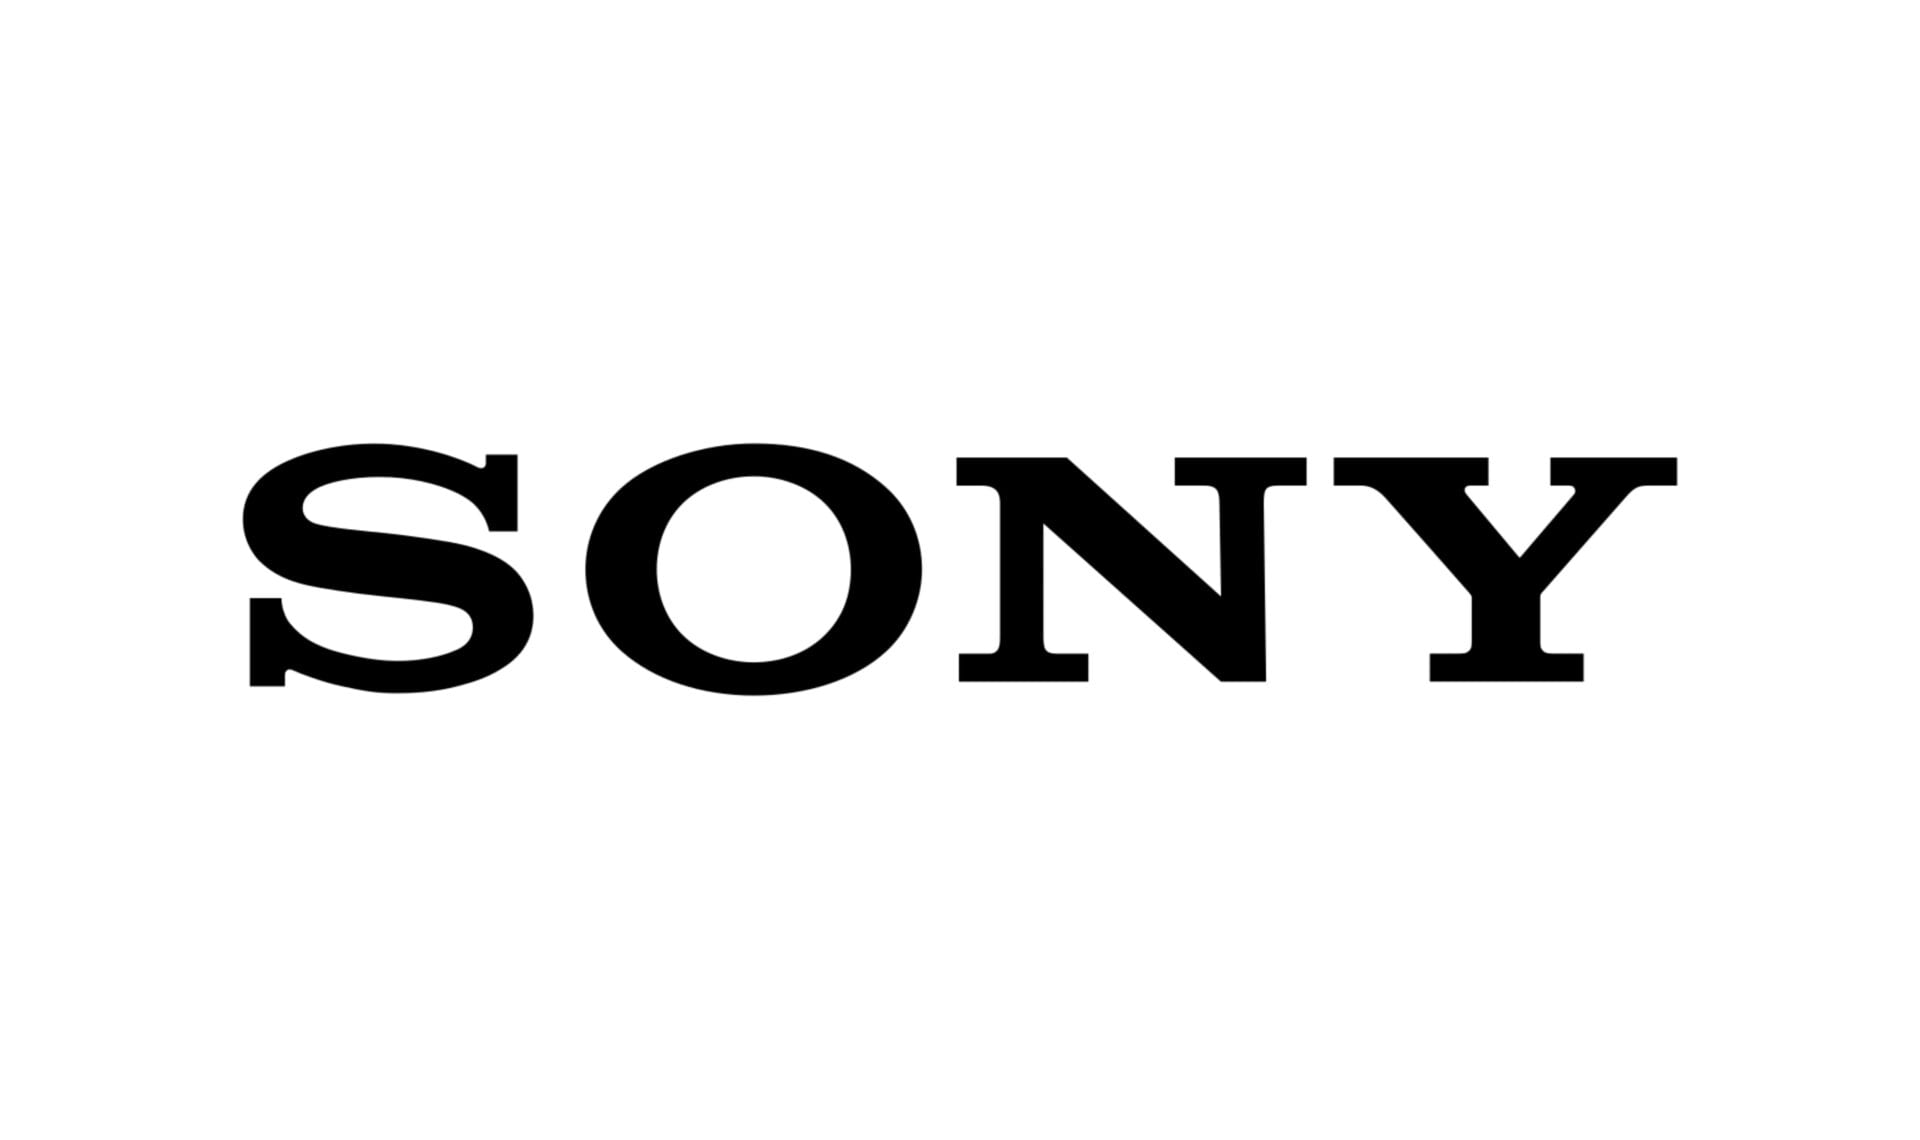 A participação da receita da Sony no mercado de sensores de imagem para smartphones caiu no primeiro semestre de 2020